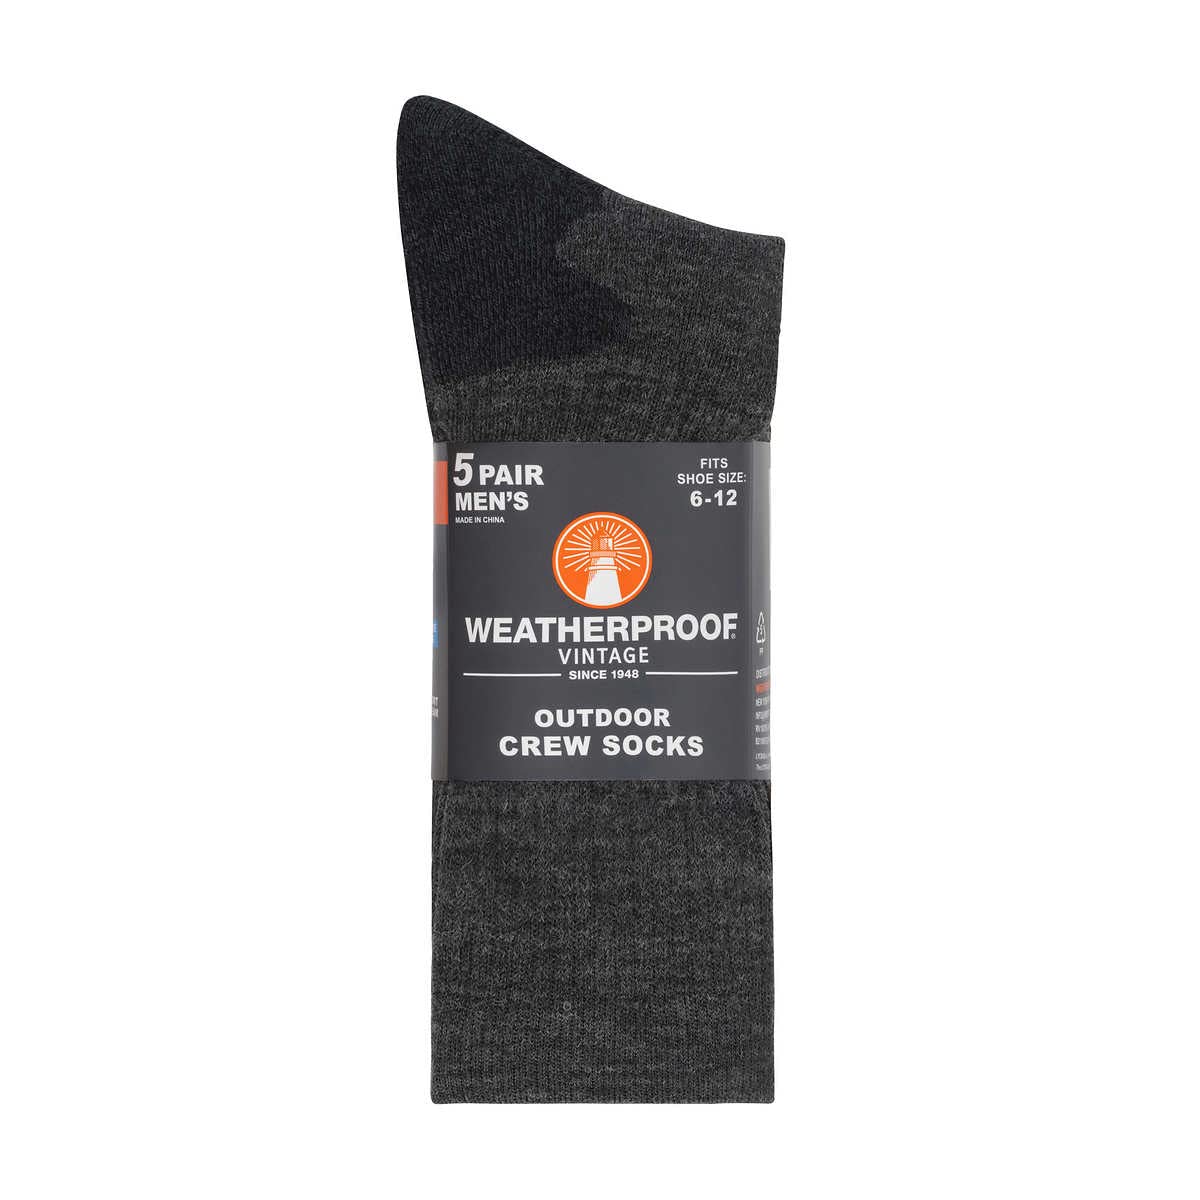 Weatherproof Vintage Men's Outdoor Wool Blend Crew Socks, Black, 5 Pairs